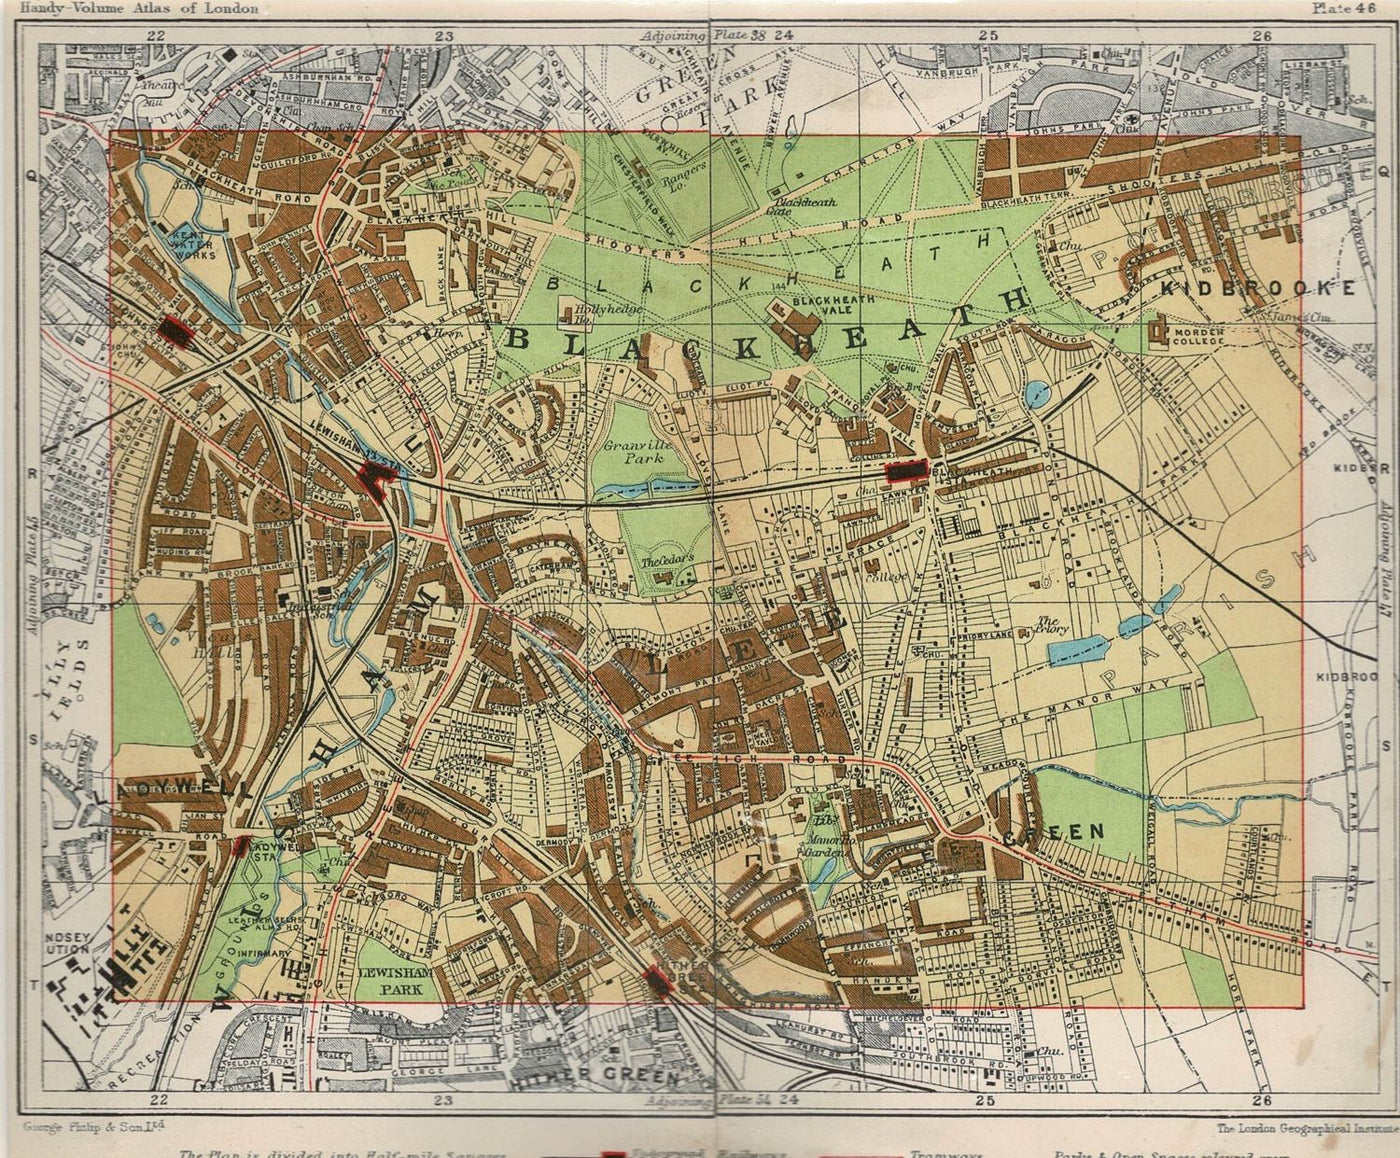 Blackheath antique map 1922